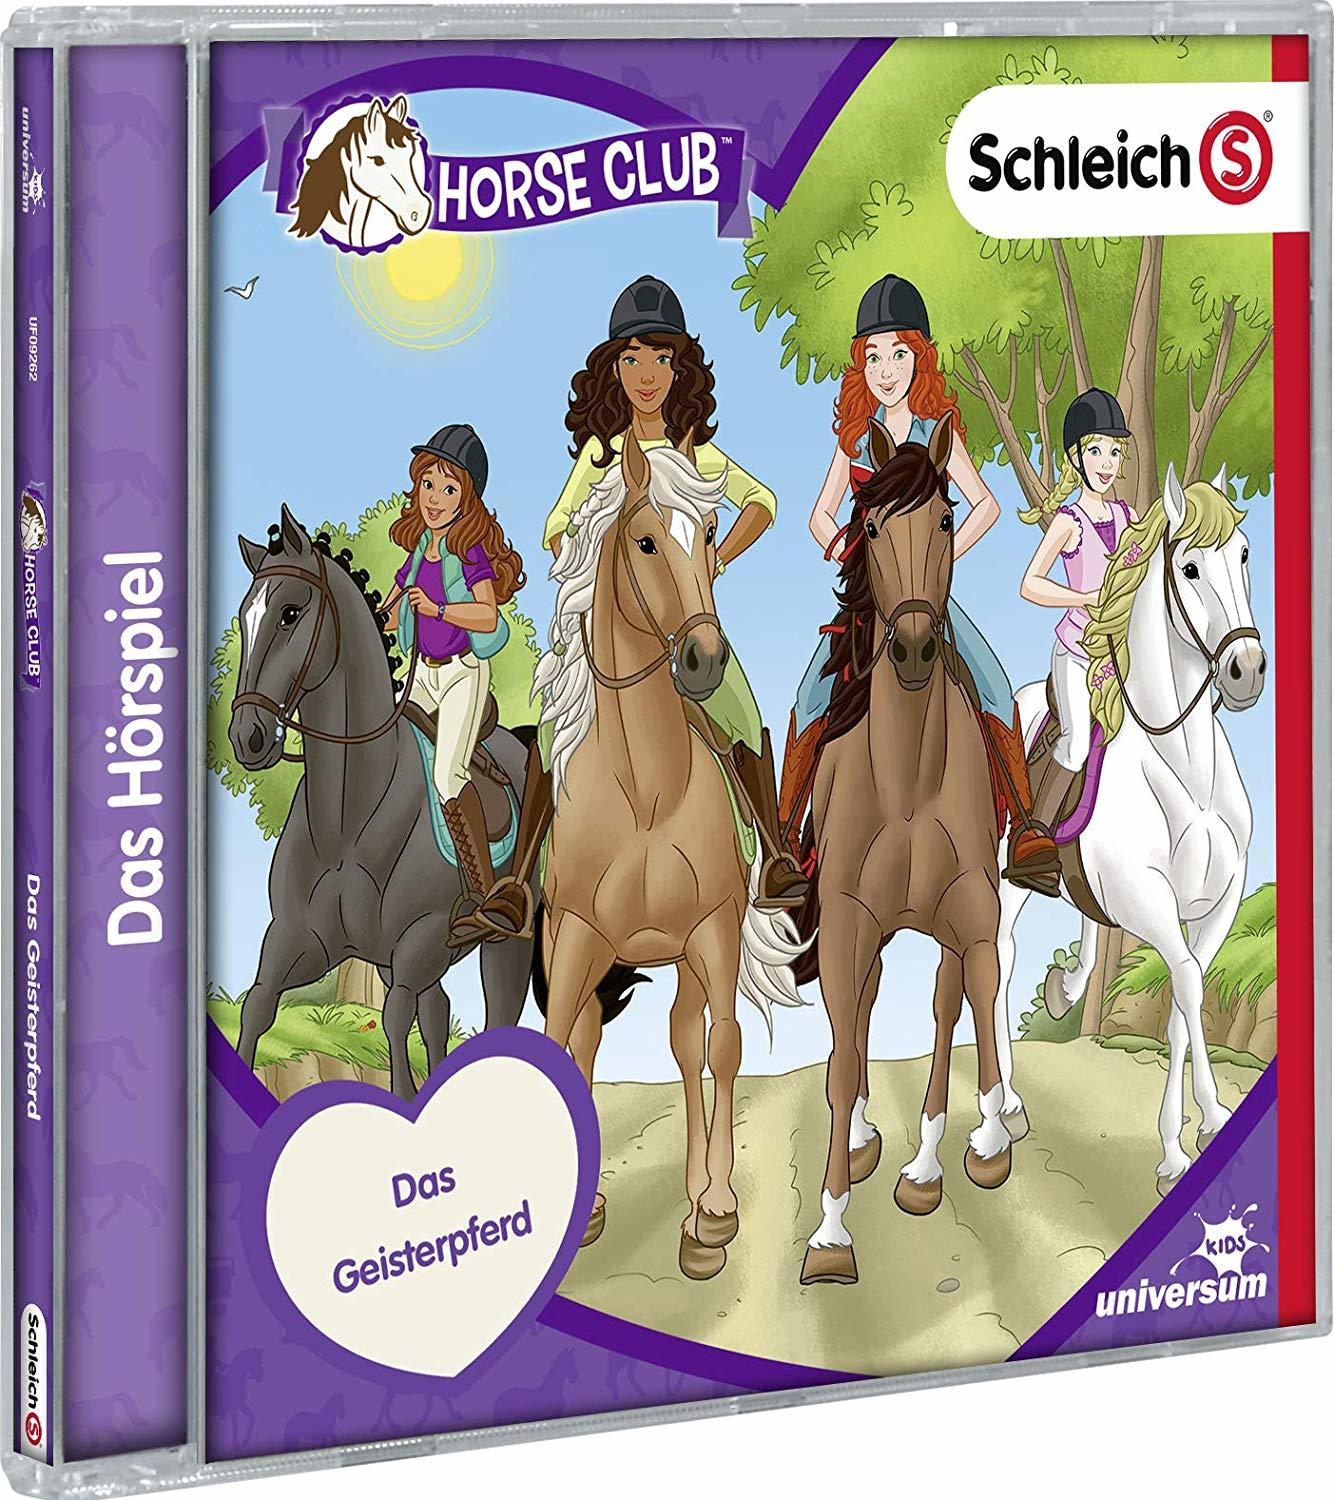 VARIOUS - (CD (CD) - 5) Schleich-Horse Club